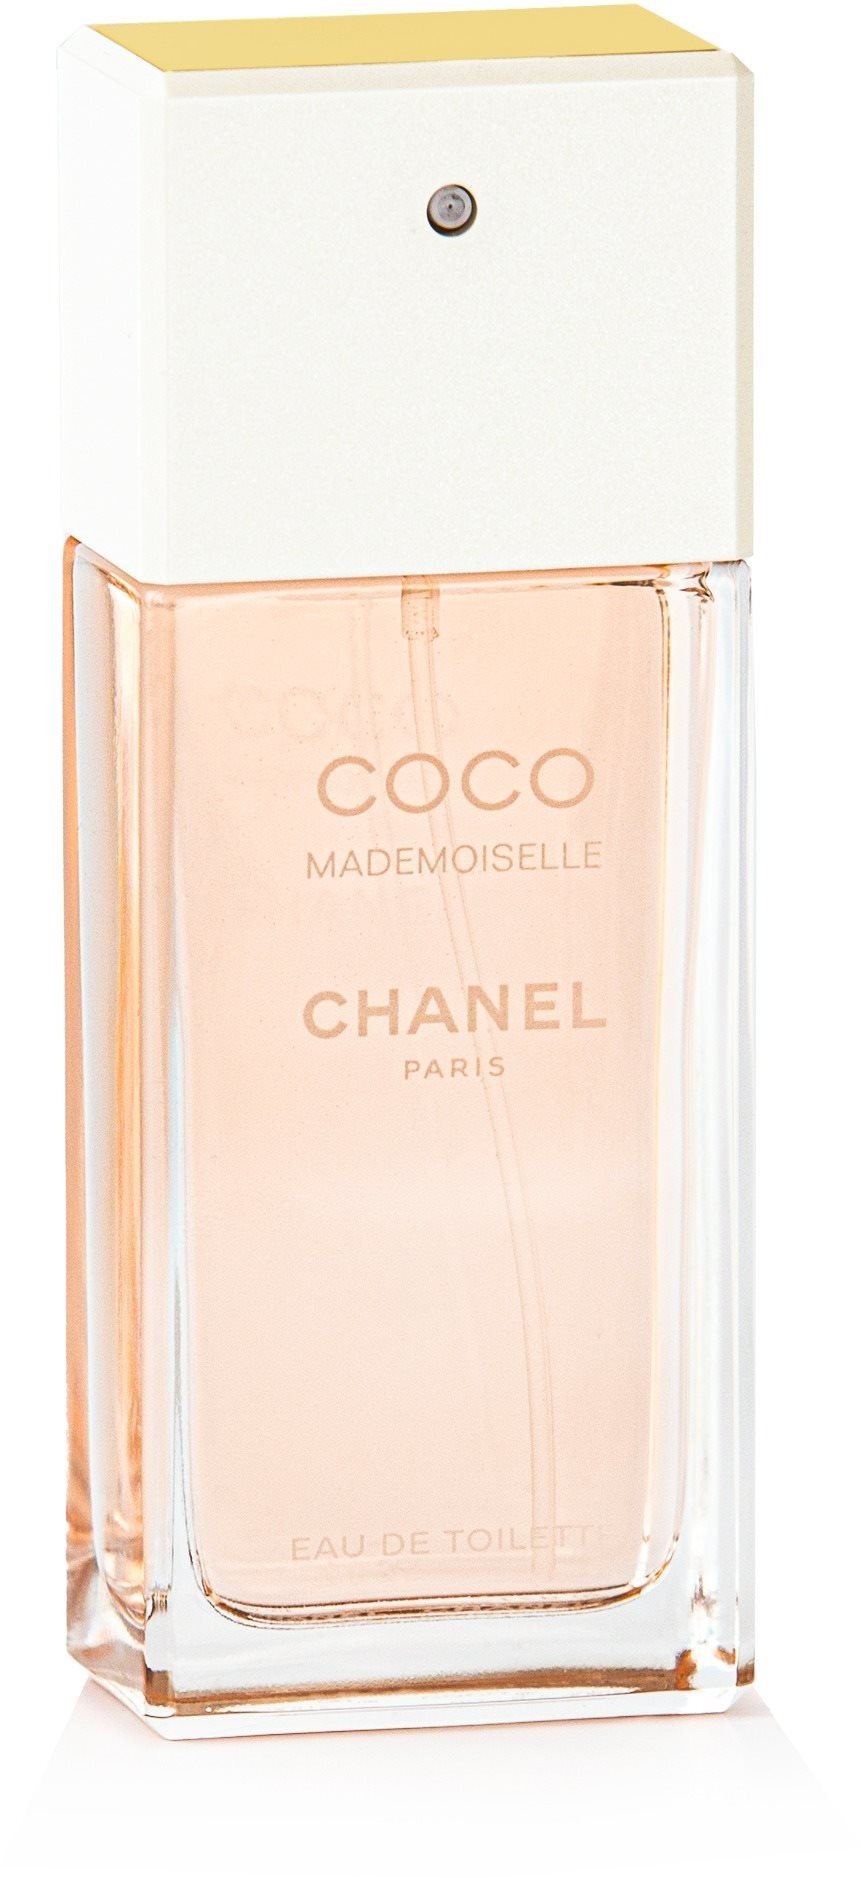 Chanel Coco Mademoiselle Eau de Toilette hölgyeknek 50 ml